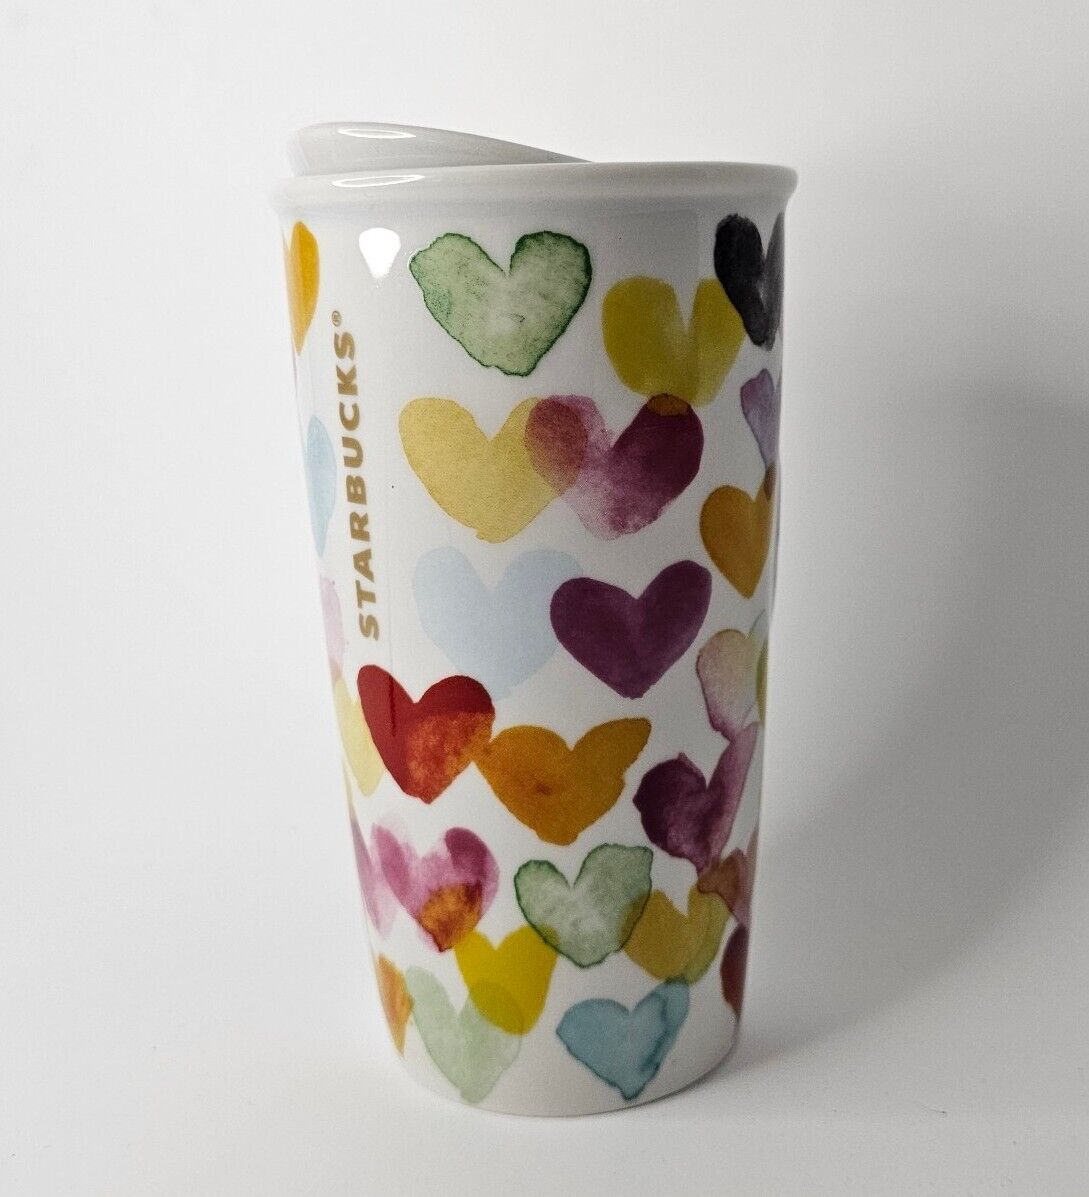 Starbucks Watercolor Hearts Ceramic Tumbler 10 oz 2015 Travel Mug Original Lid